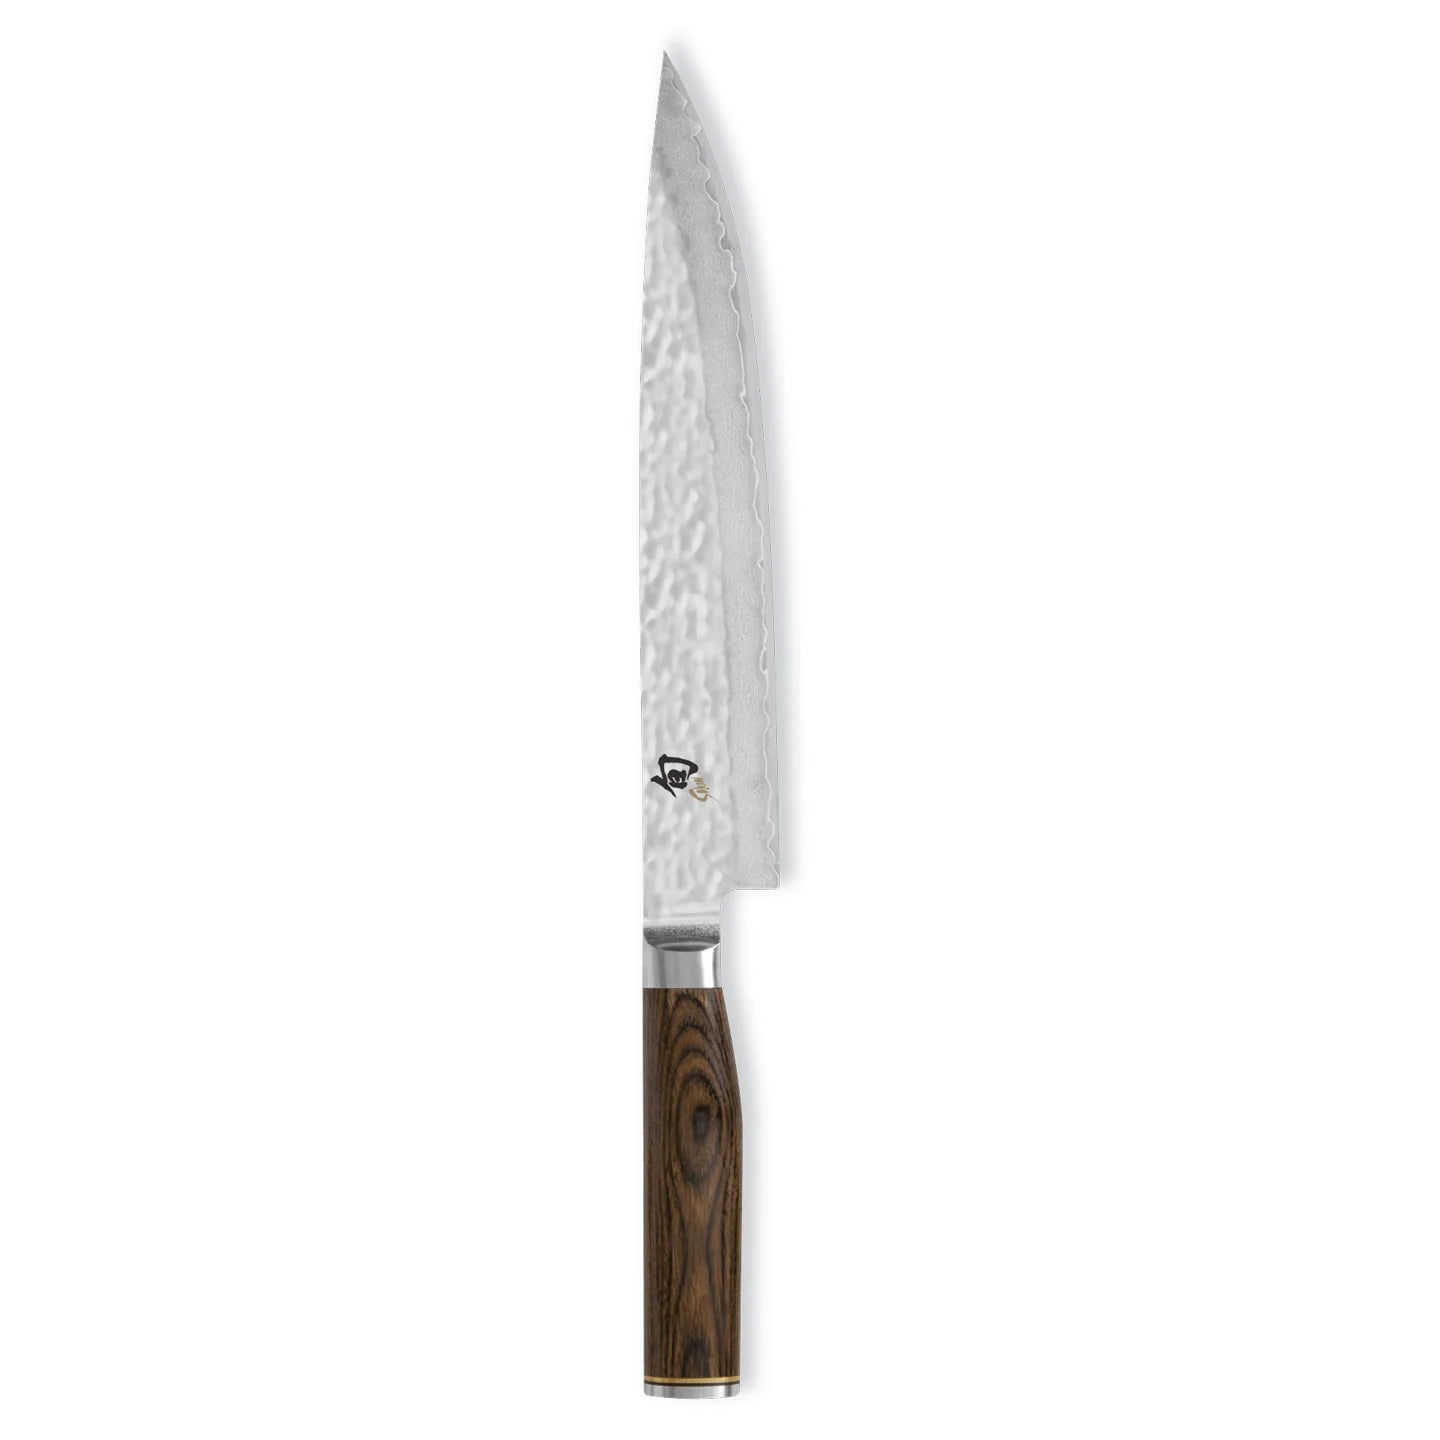 Buy Japanese Knives & Kitchen Knives - UK's Best Price